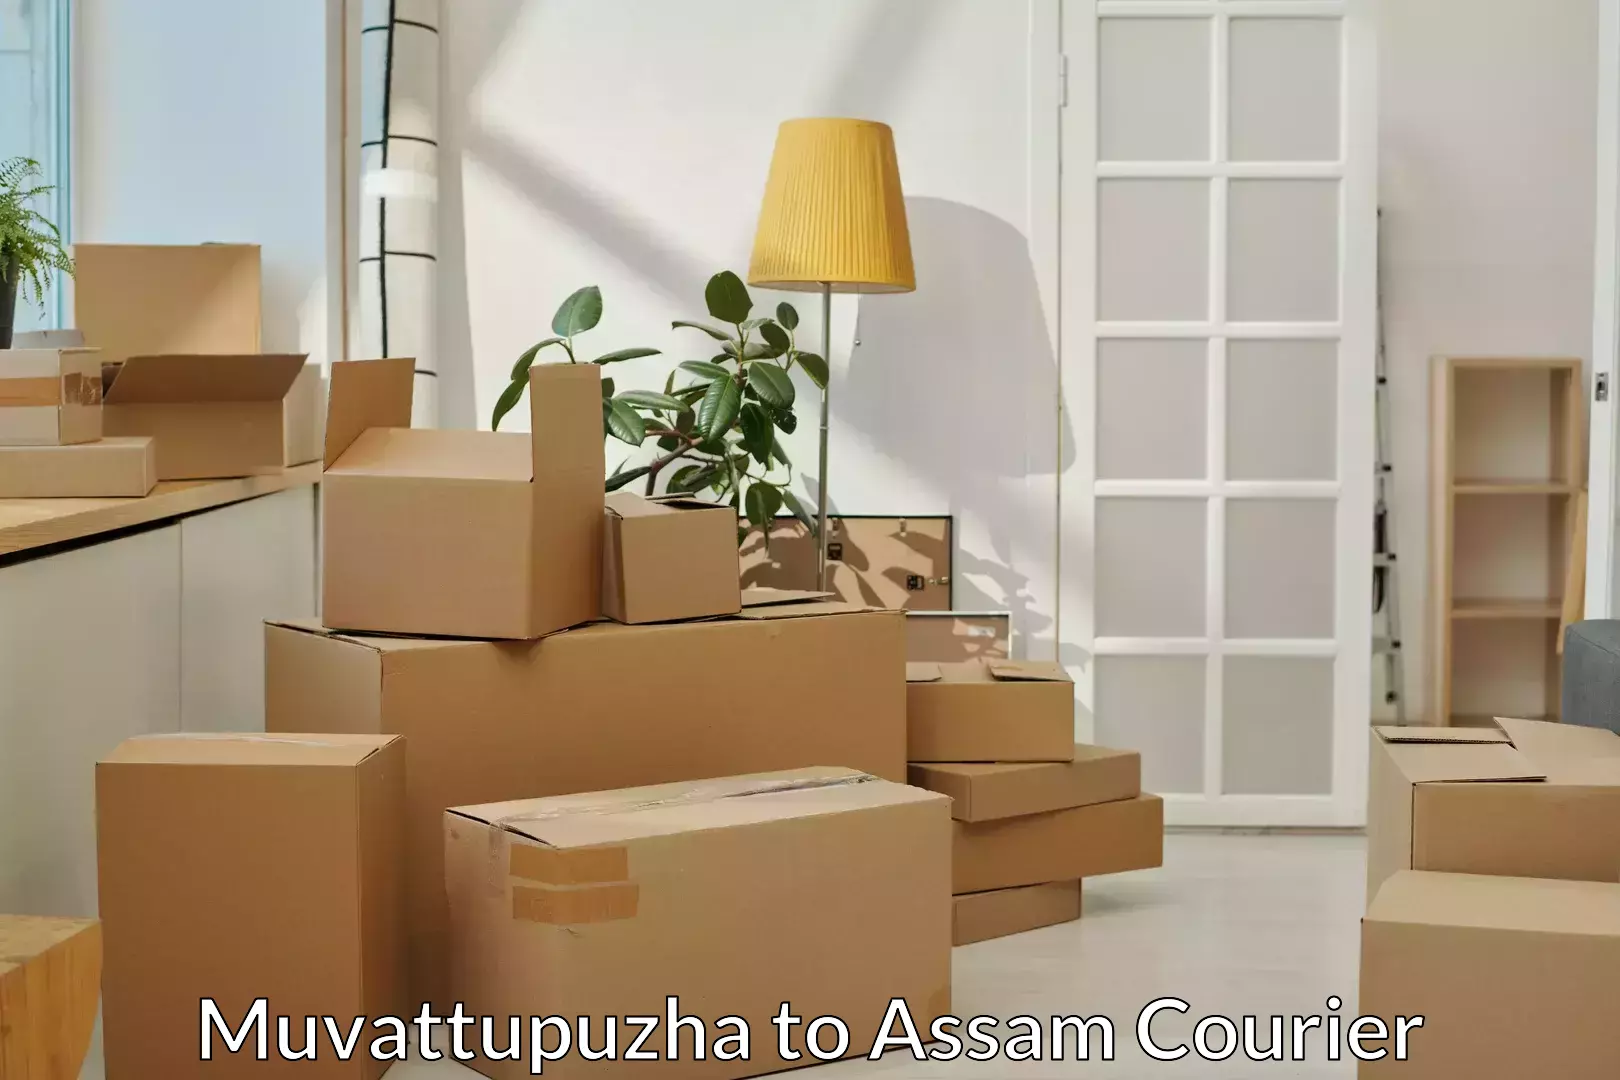 Professional moving company Muvattupuzha to Assam